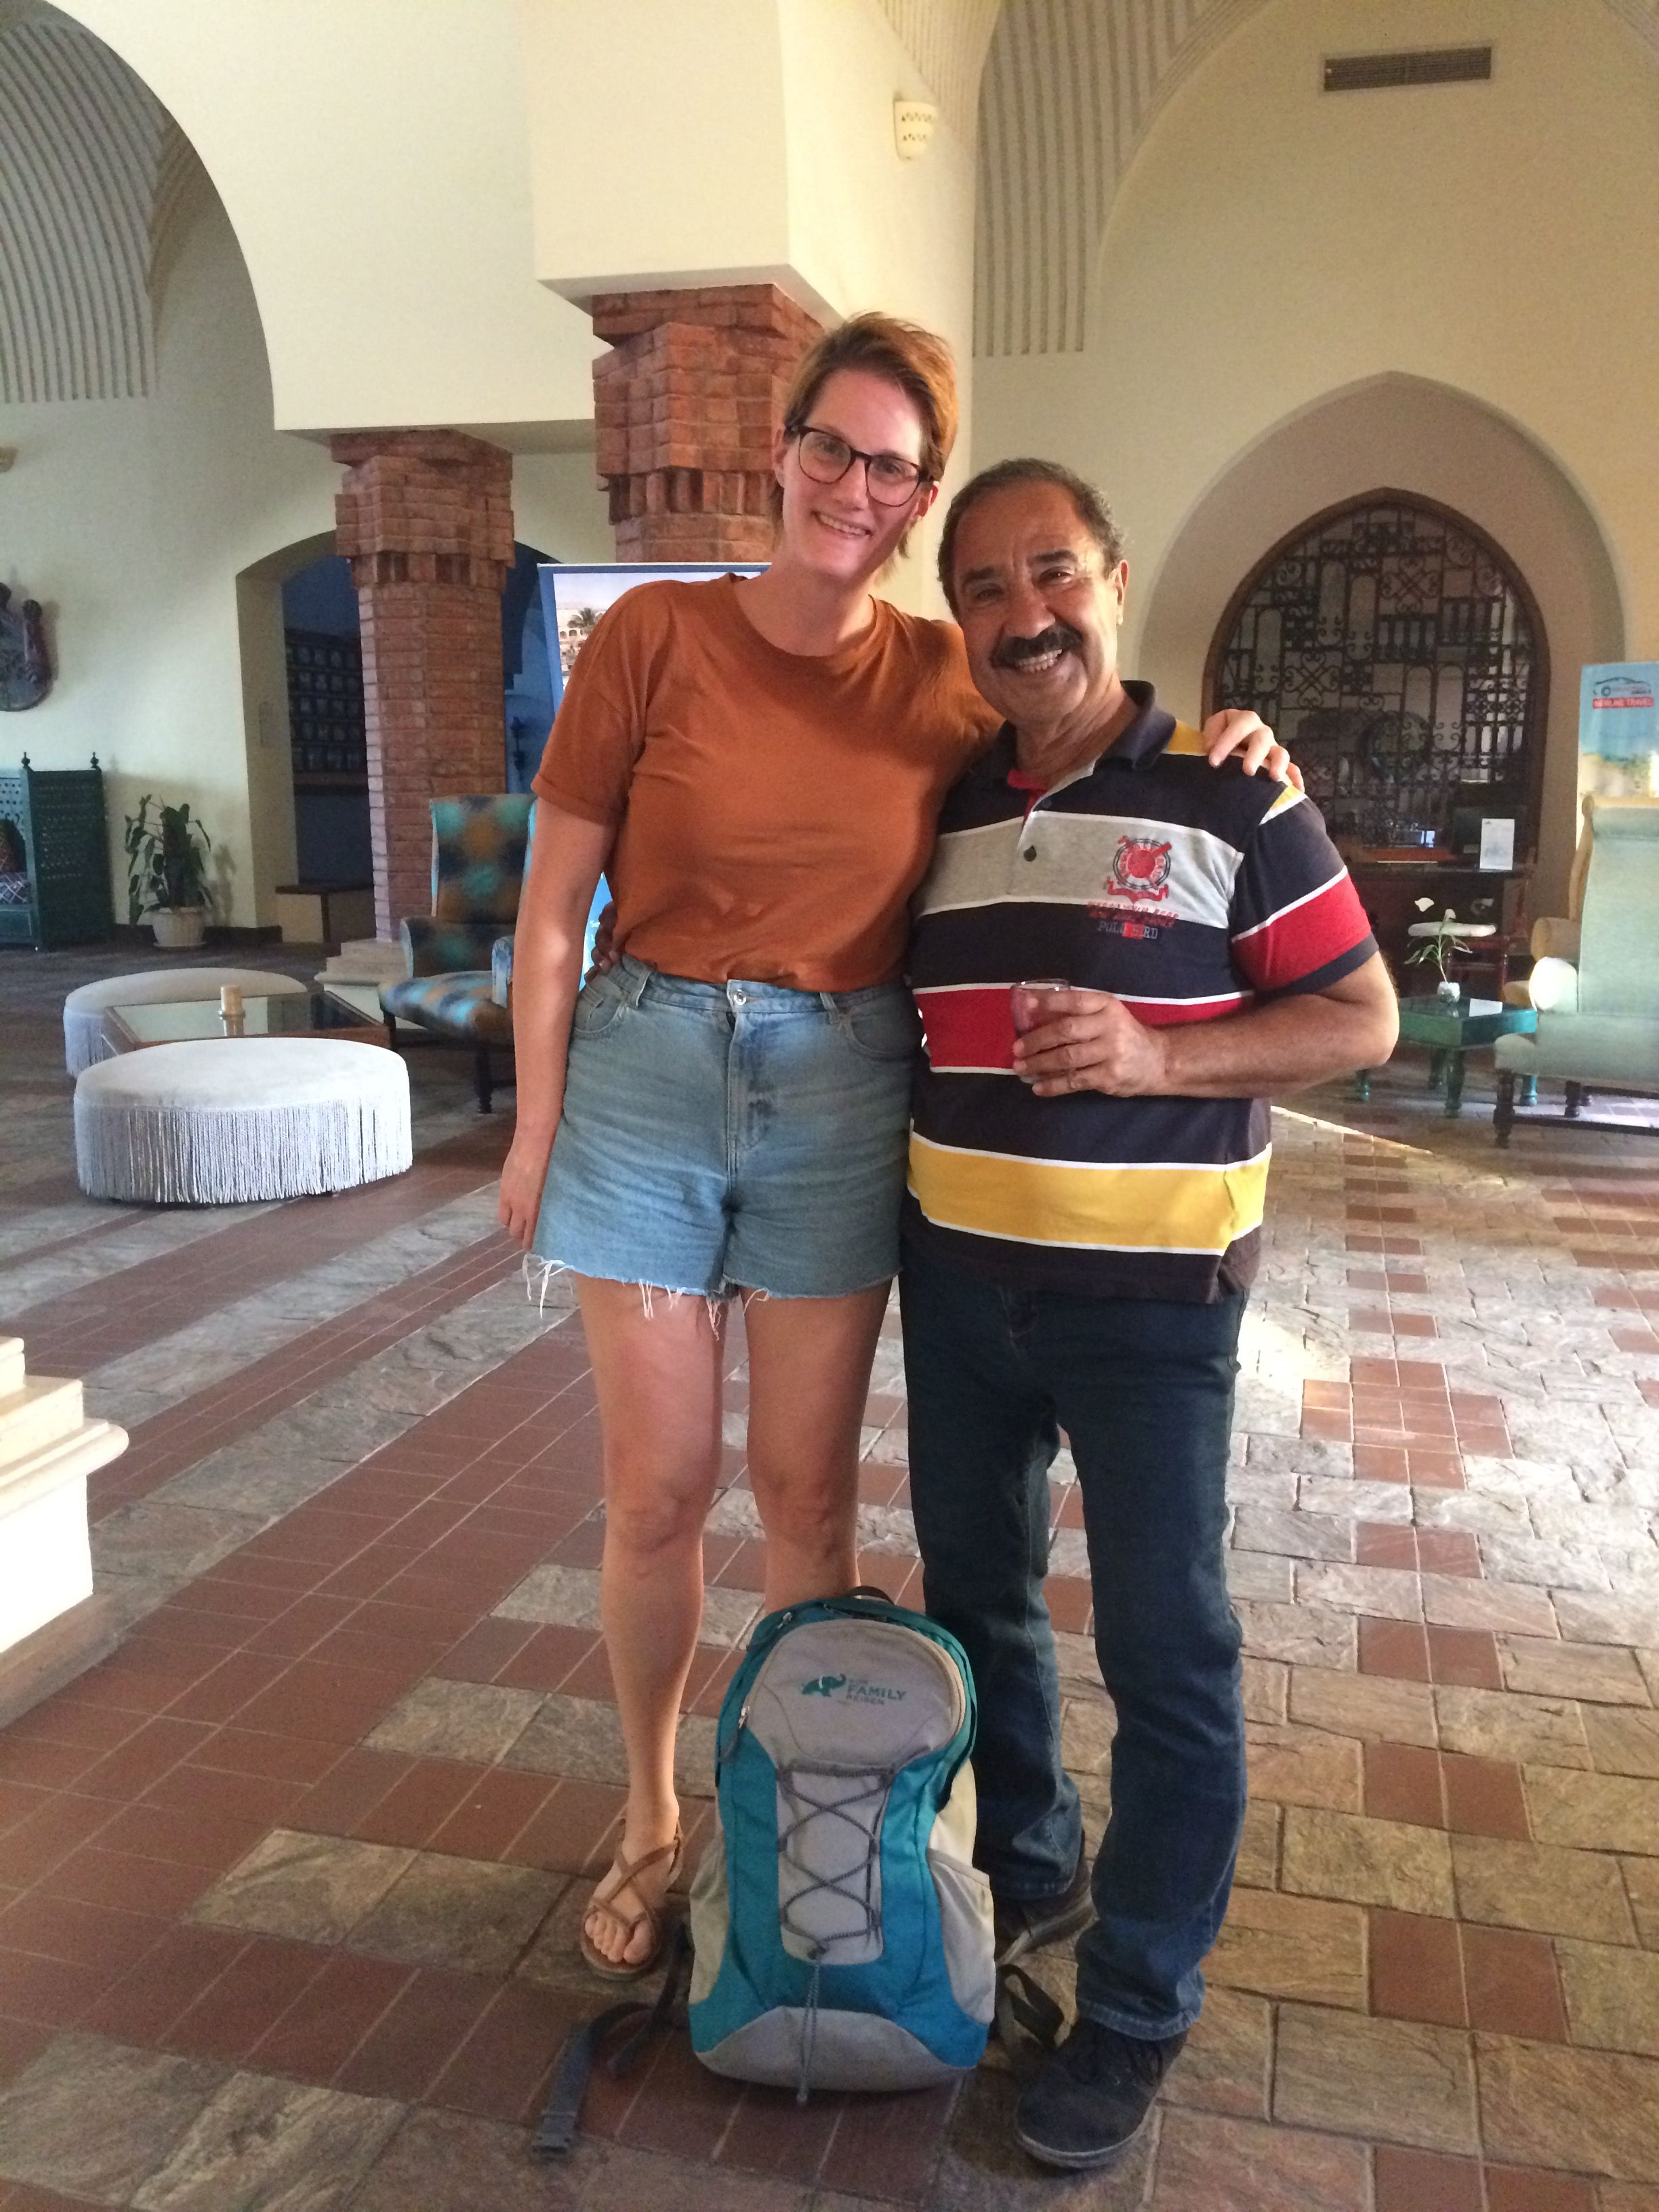 Ägypten Urlaub mit Kindern: Erfahrungen und Empfehlungen vom Reisespezialisten - Reiseleiter Ägypten for family